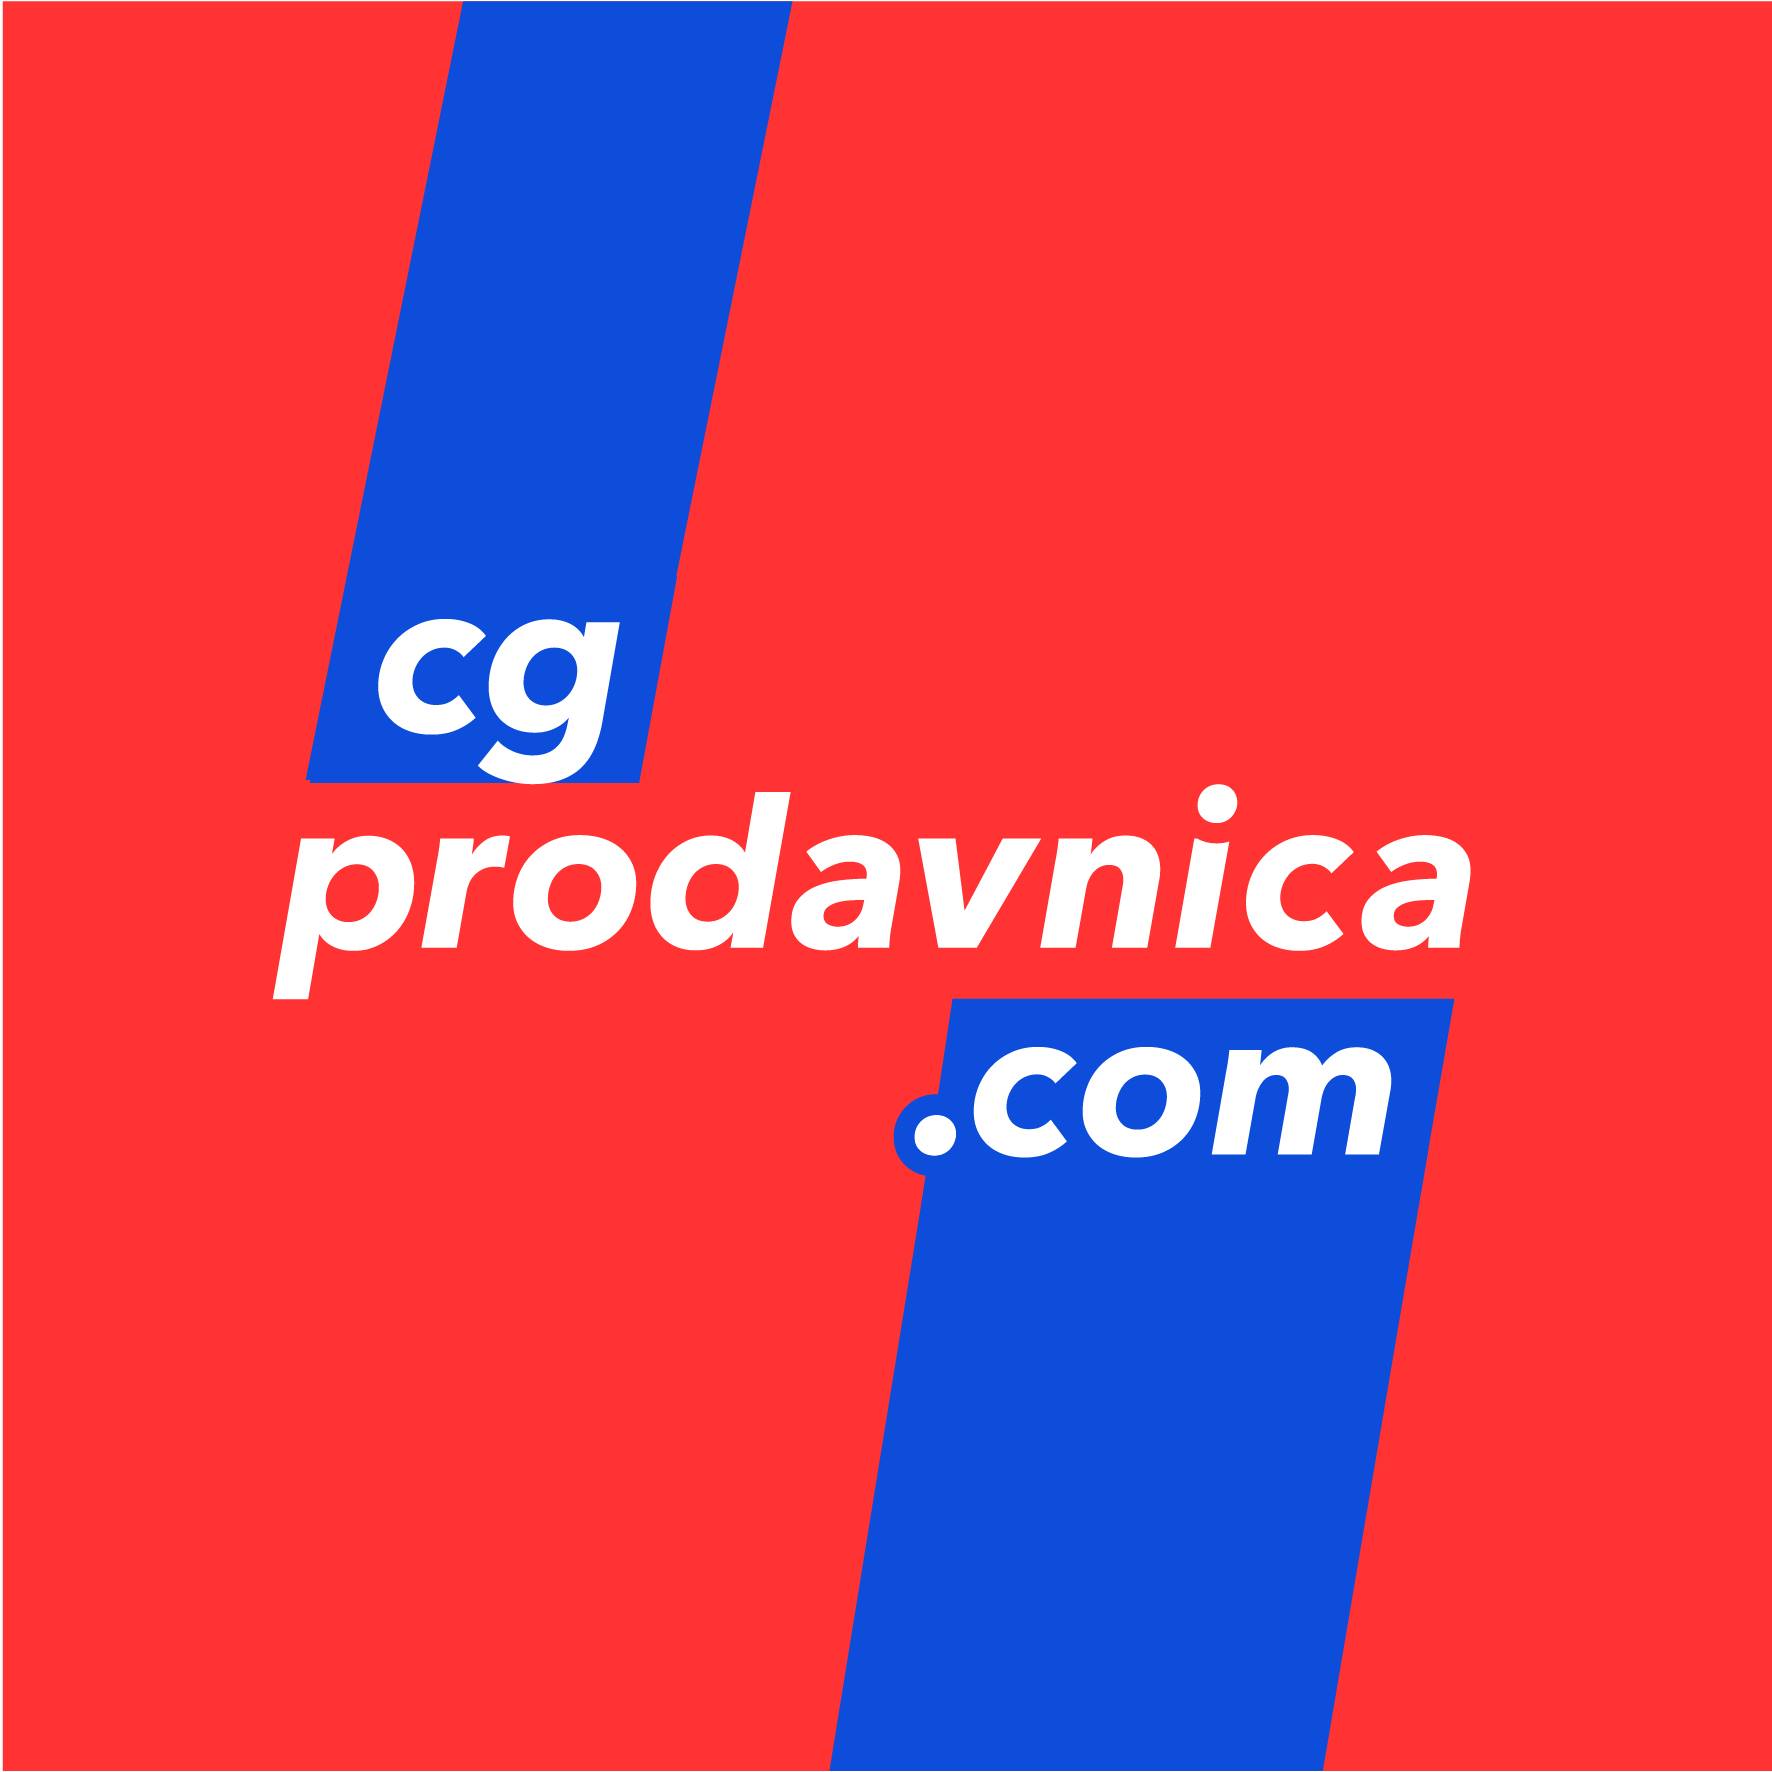 cgprodavnica.com - crnogorski Ali